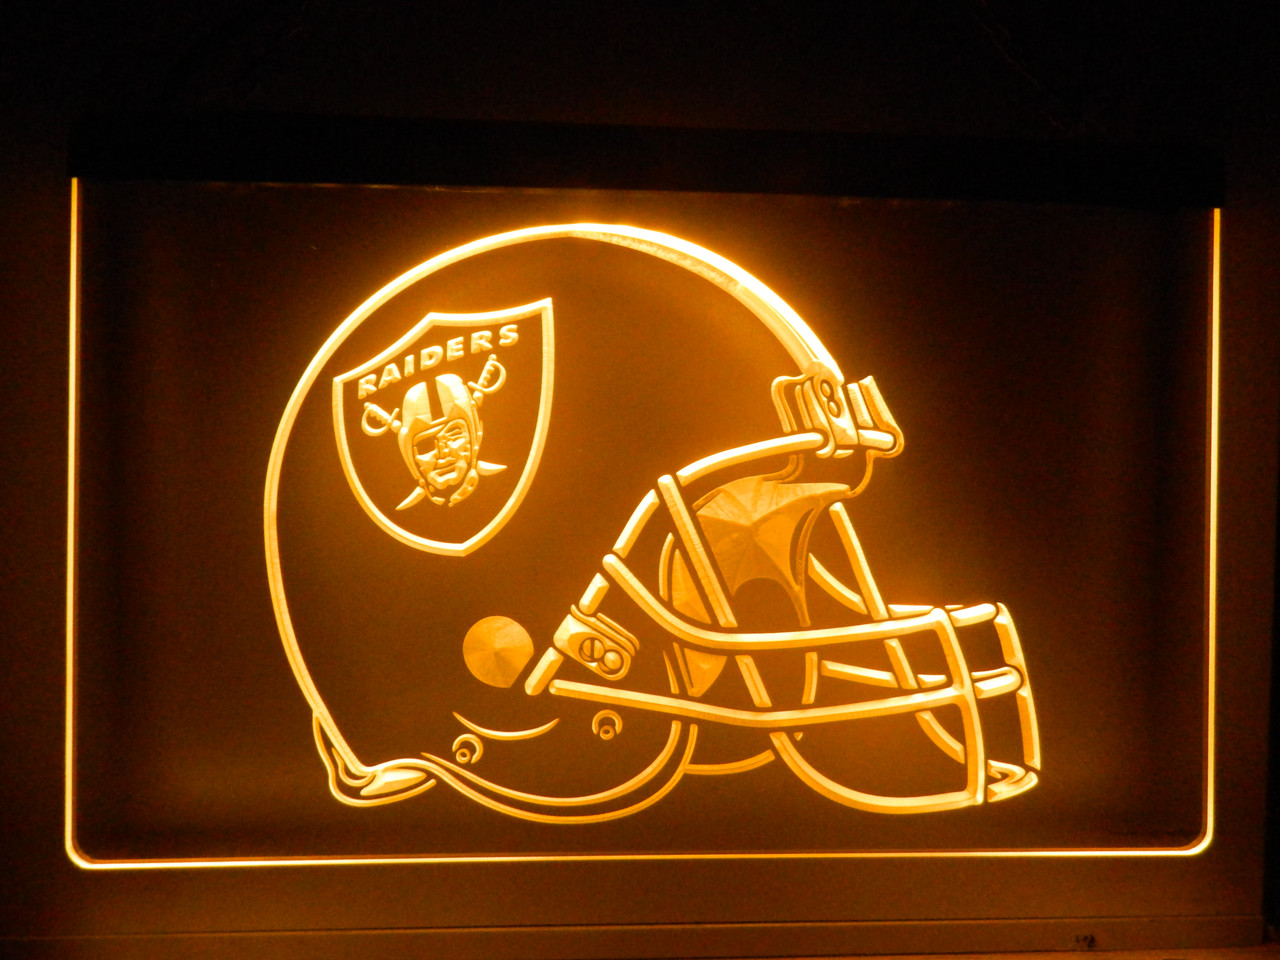 Las Vegas Raiders LED Helmet Tabletop Sign